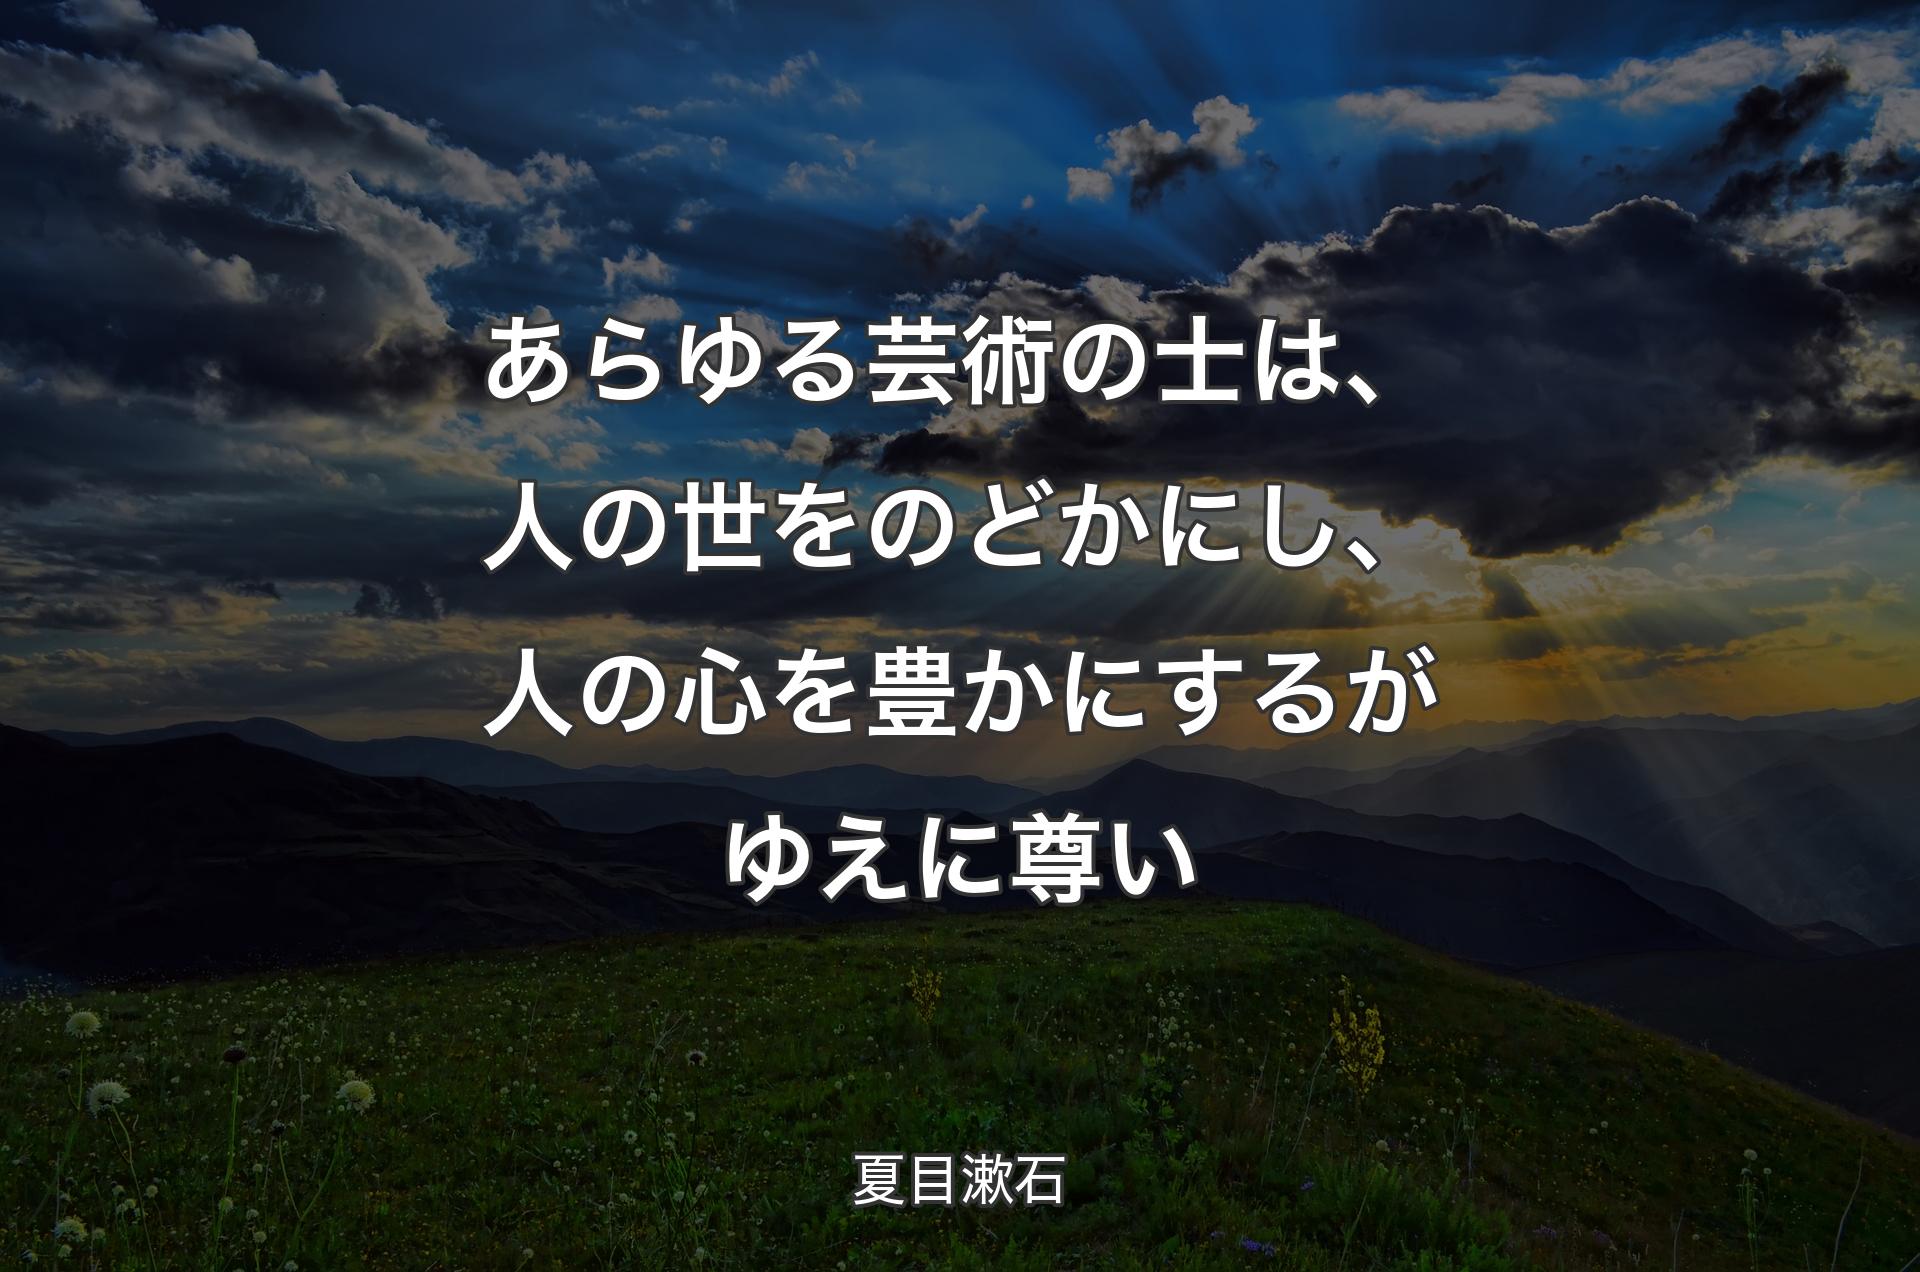 あらゆる芸術の士は、人の世をのどかにし、人の心を豊かにするがゆえに尊い - 夏目漱石